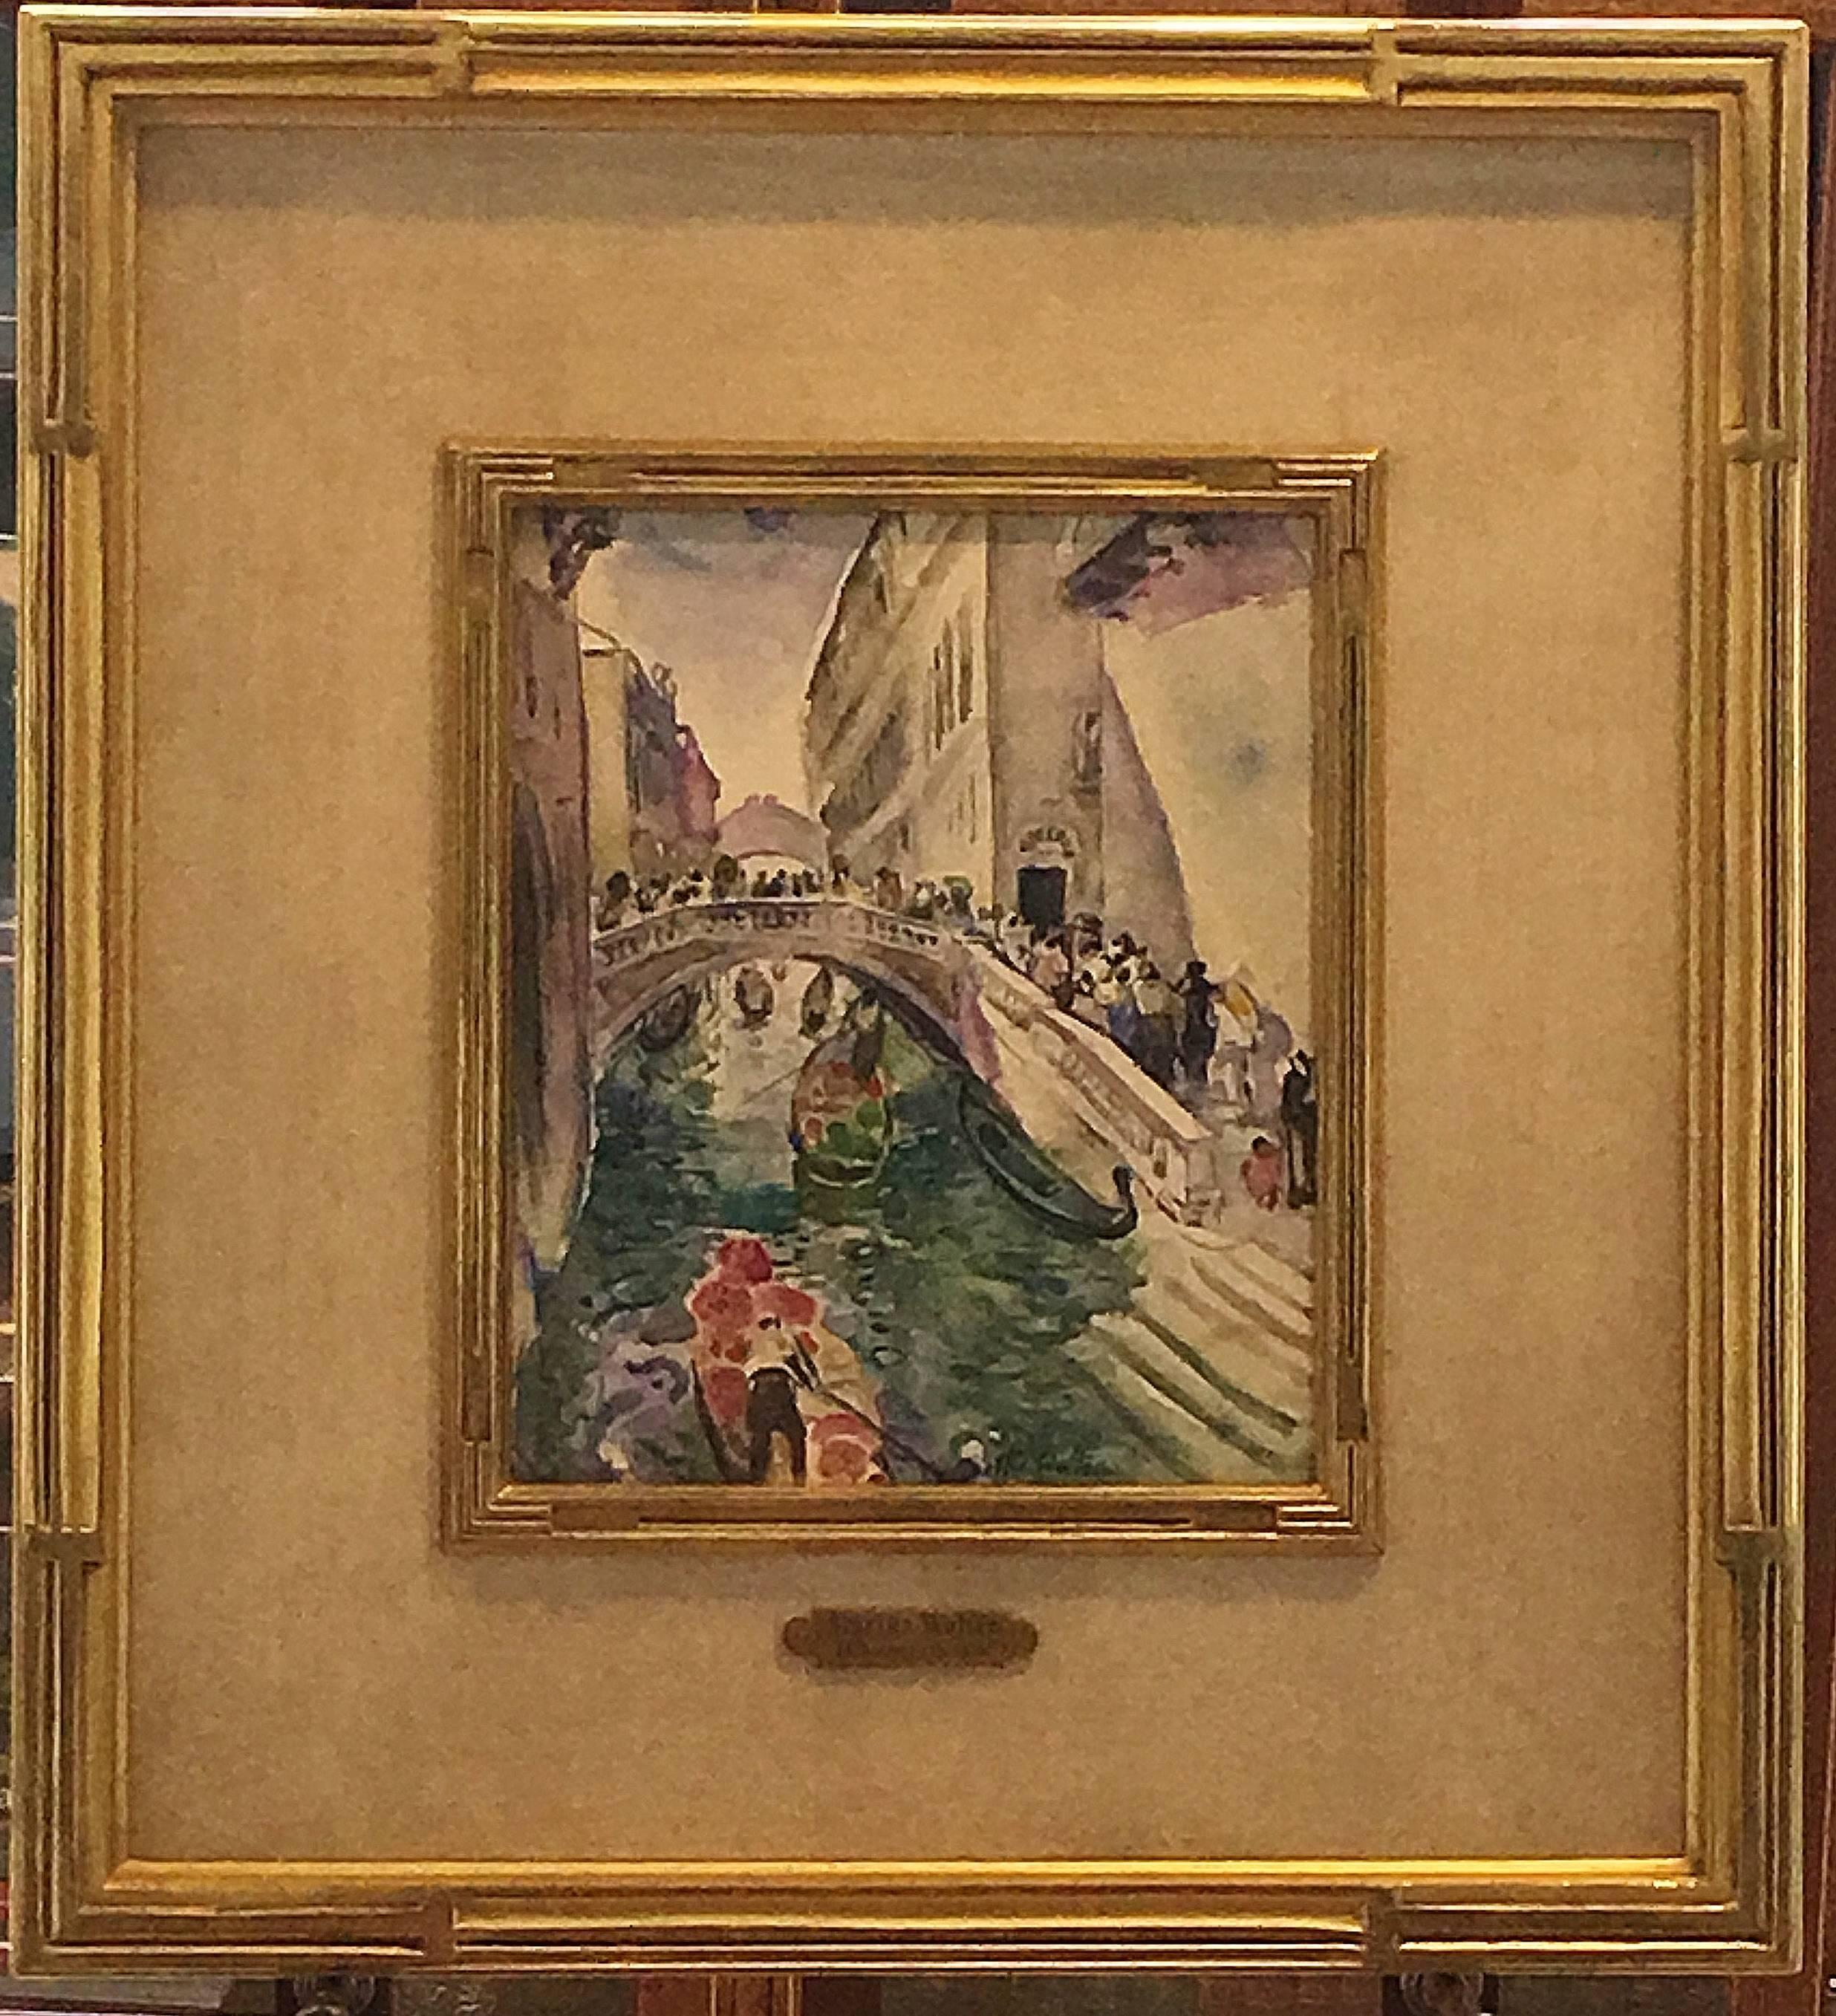 Venice Gondolier - American Impressionist Art by Martha Walter